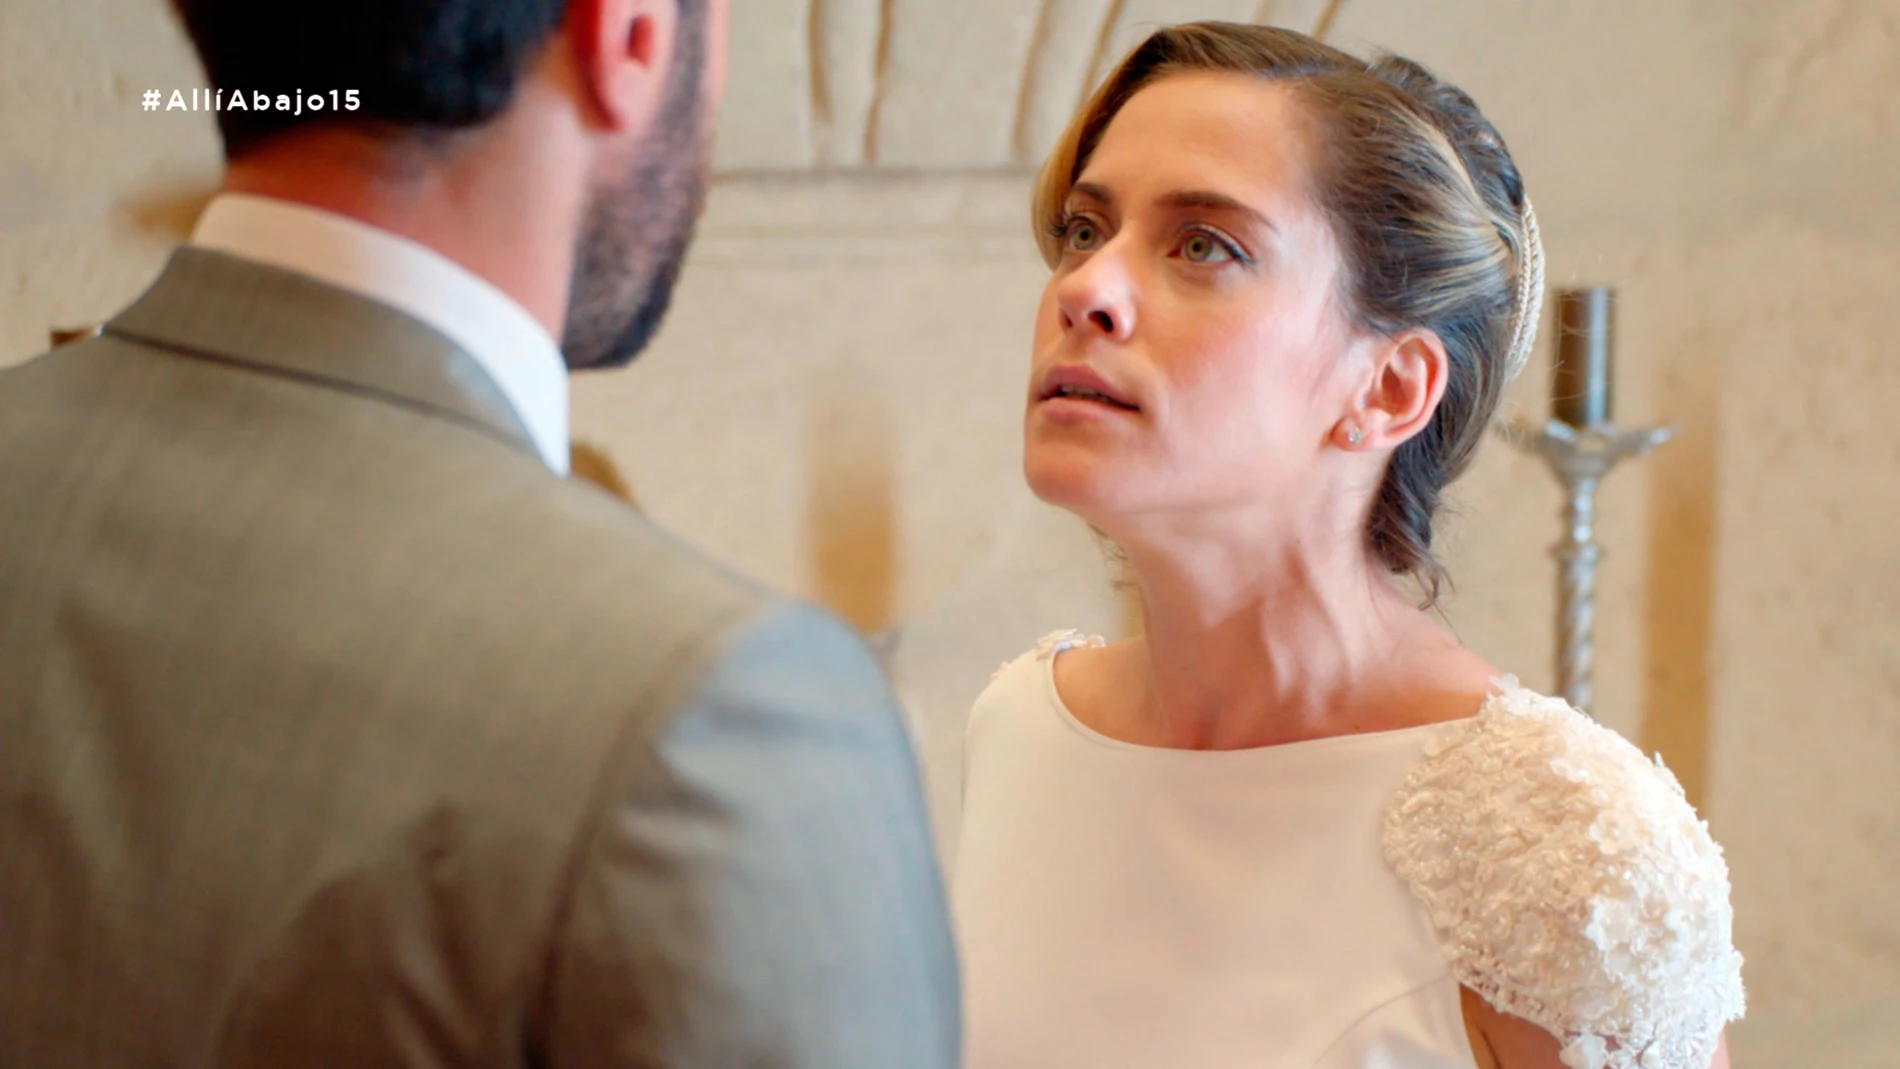 Carmen a punto de cancelar la boda: "No me puedo casar contigo por una confusión"